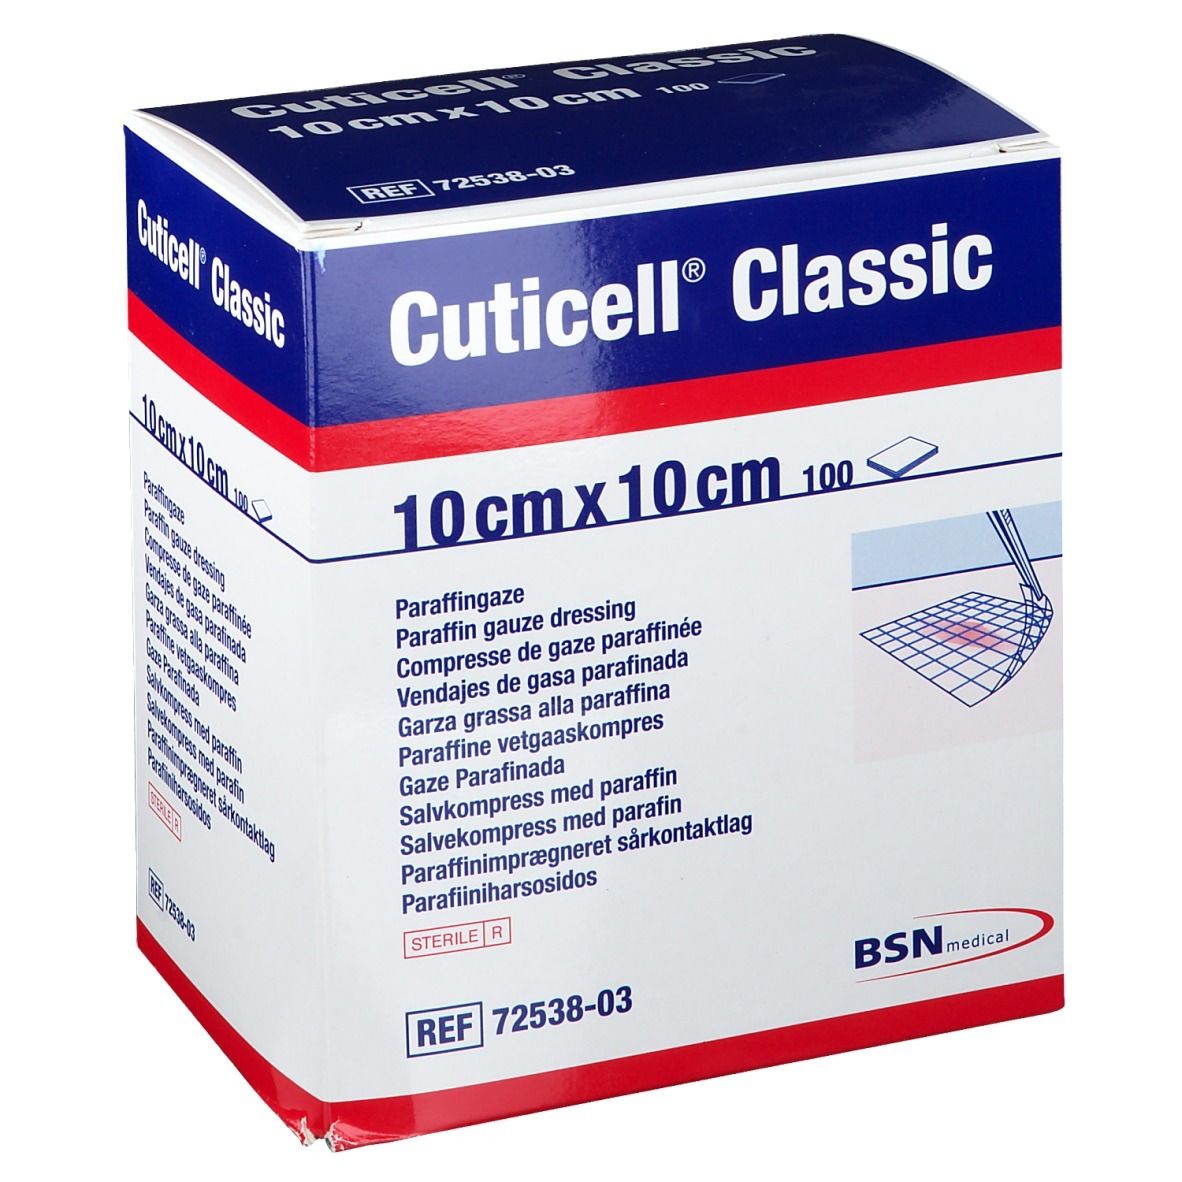 Cuticell® Classic 10 cm x 10 cm